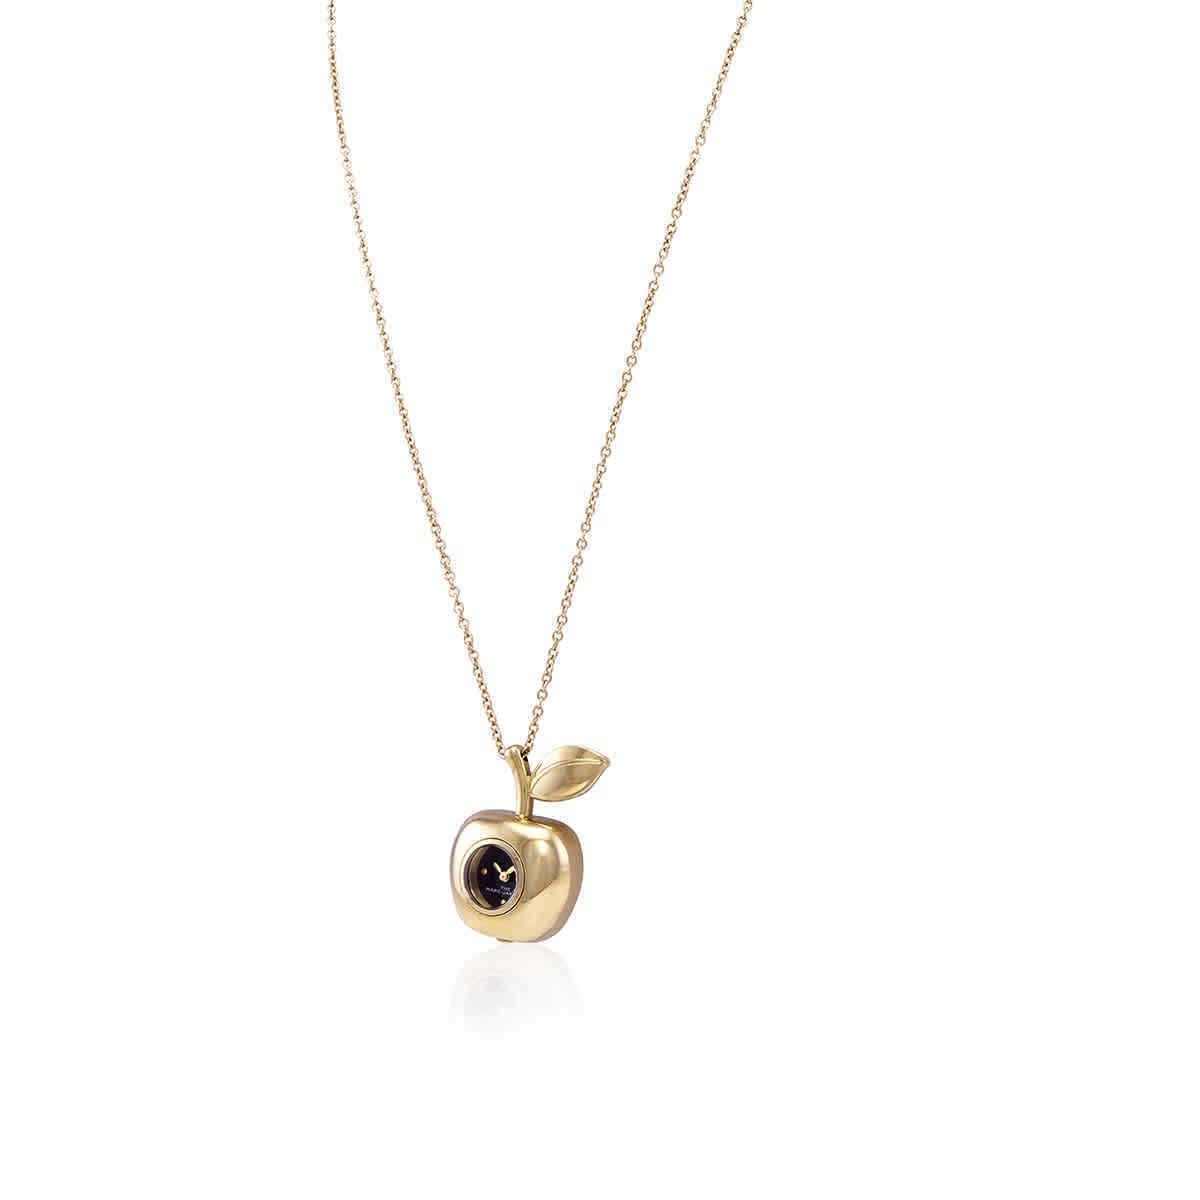 Marc Jacobs Quartz Black Dial The Bauble Apple Pendant Ladies Necklace Watch